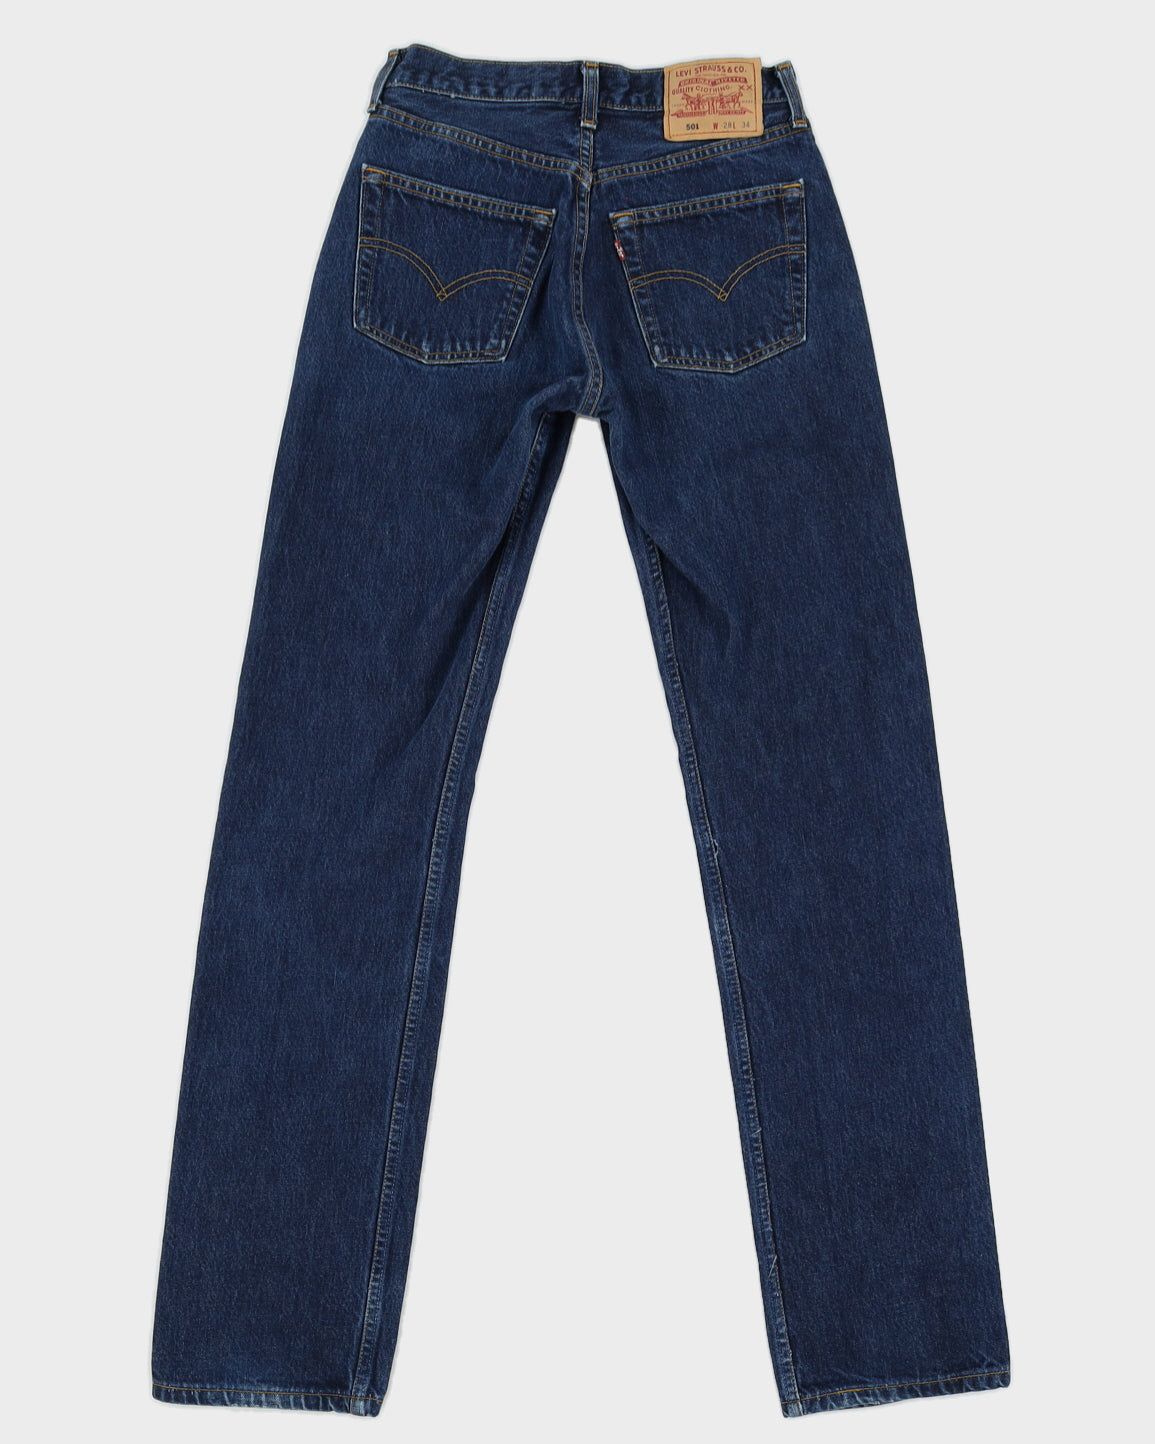 Levi's Denim Dark Wash 501 Jeans - W28 L34